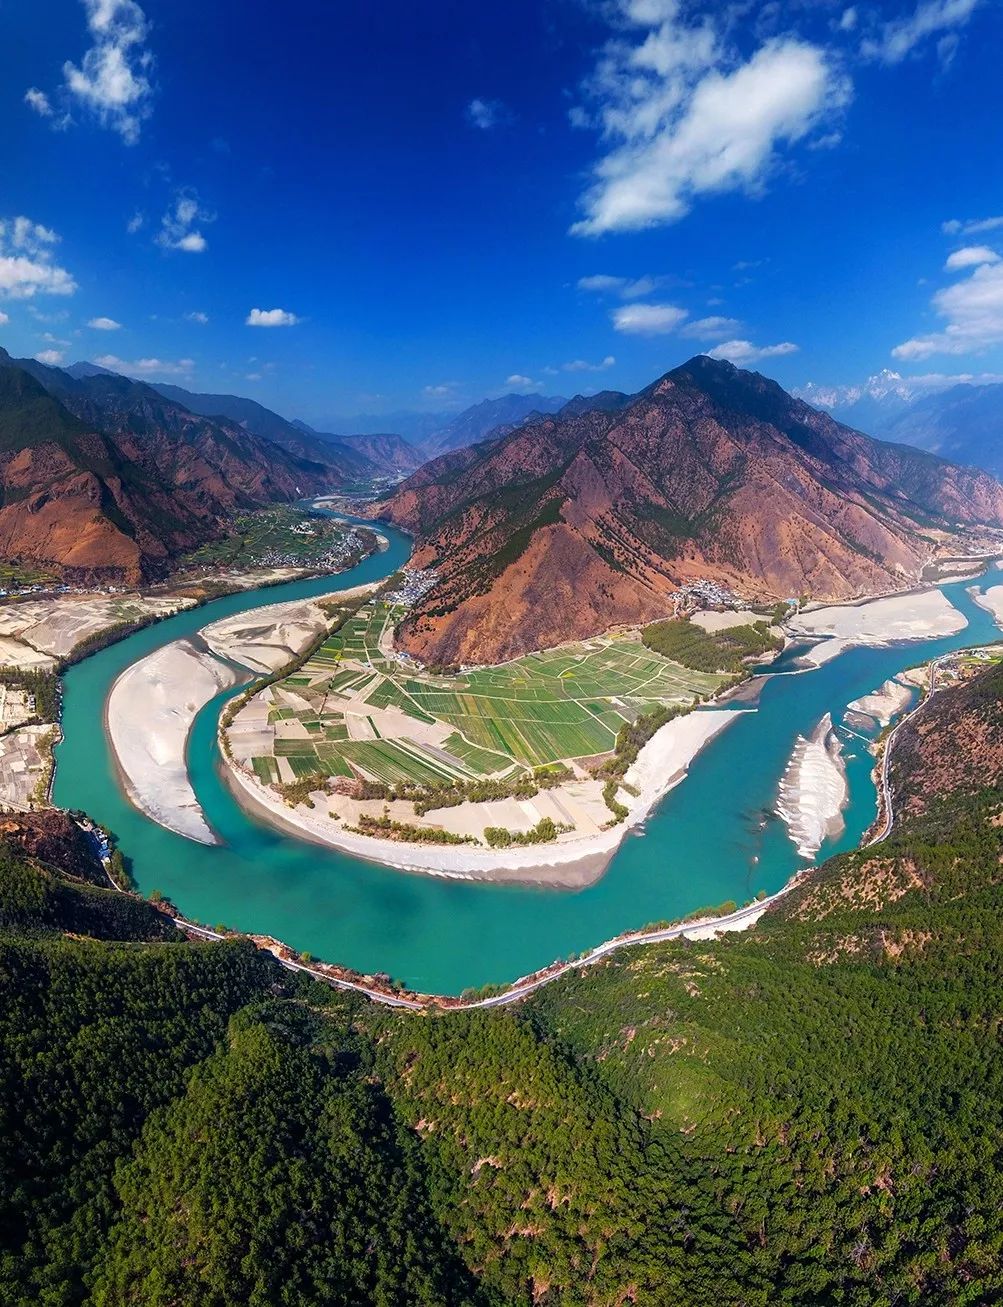 Какие крупные реки в китае. Река Янцзы Китай. Китай Долины рек Янцзы. Бассейн реки Янцзы, Китай. Долина реки Янцзы.